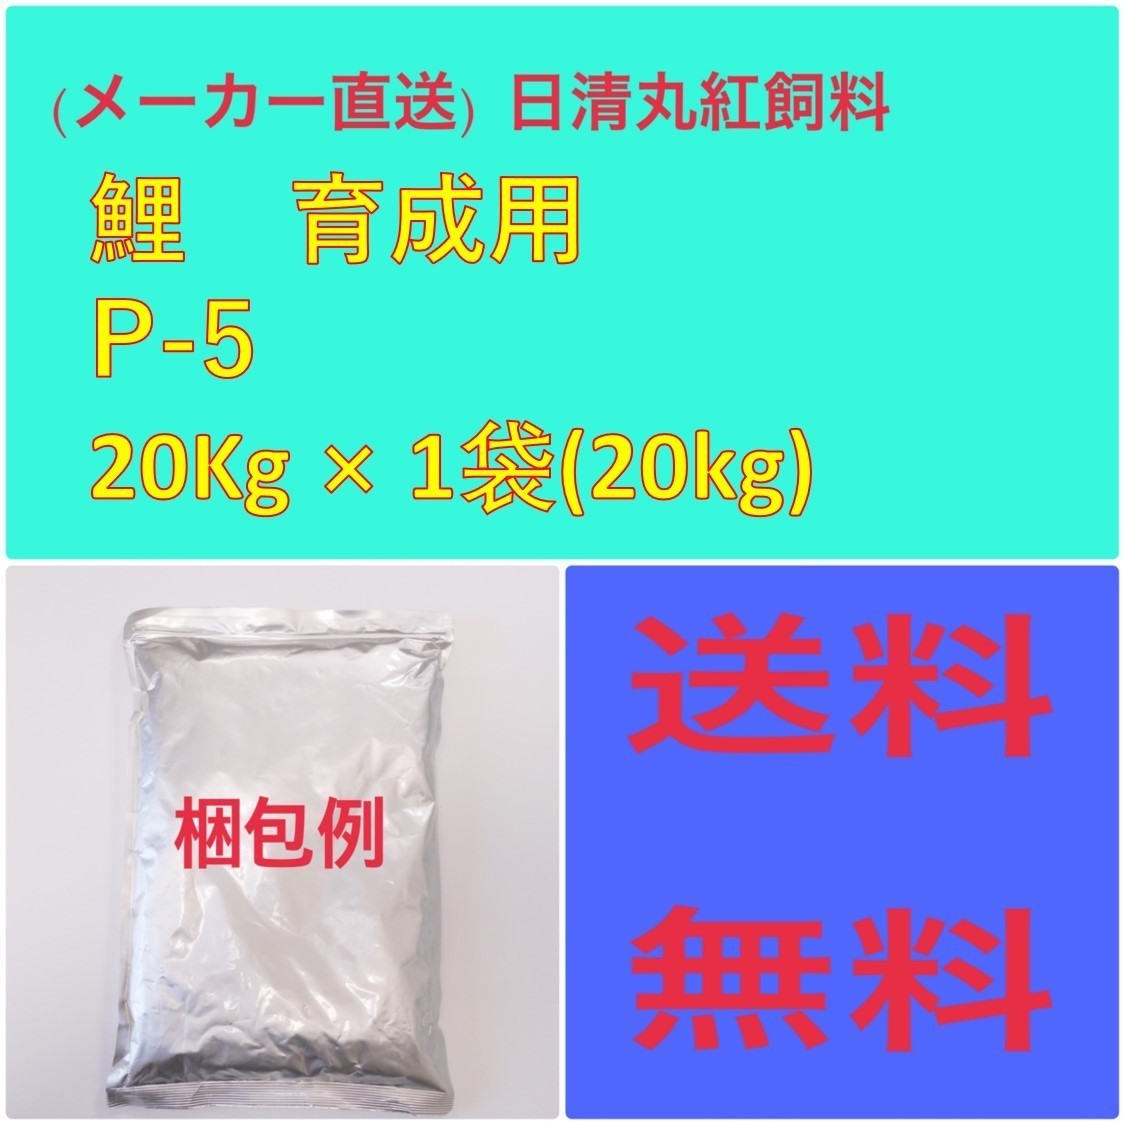 日本産 メーカー直送 超安い 日清丸紅飼料 鯉育成用 P-5 20kg 粒径 mm 100130 4.5